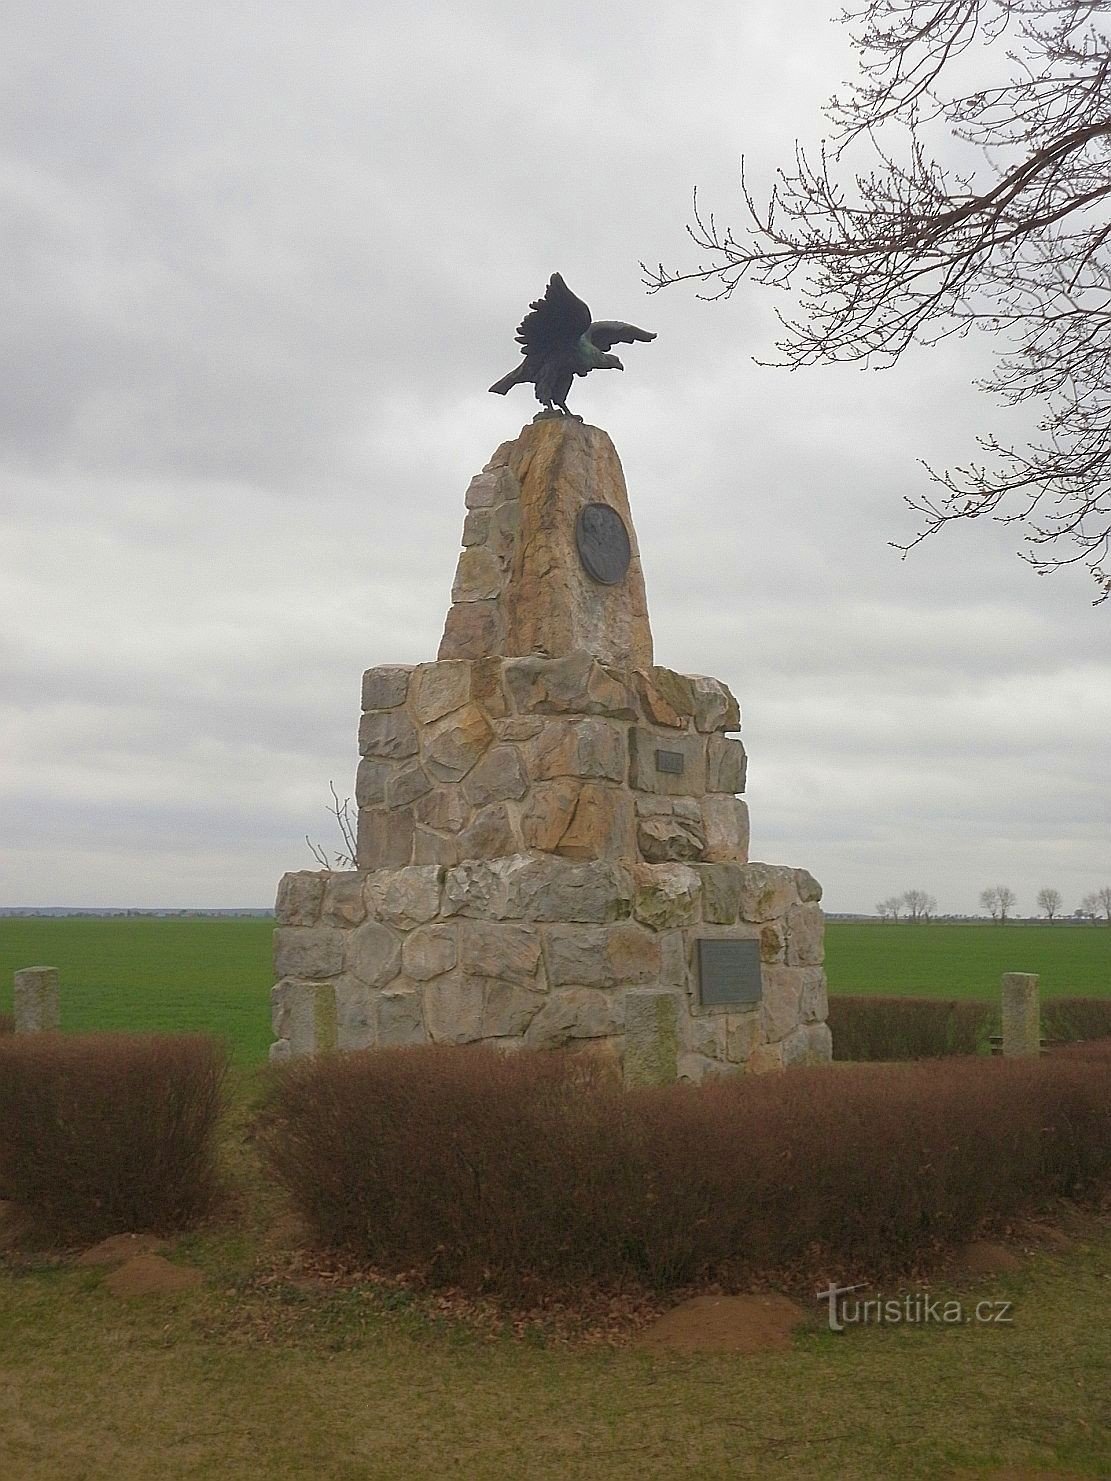 Μνημείο για τα 100 χρόνια από τον απελευθερωτικό πόλεμο κατά του Ναπολέοντα